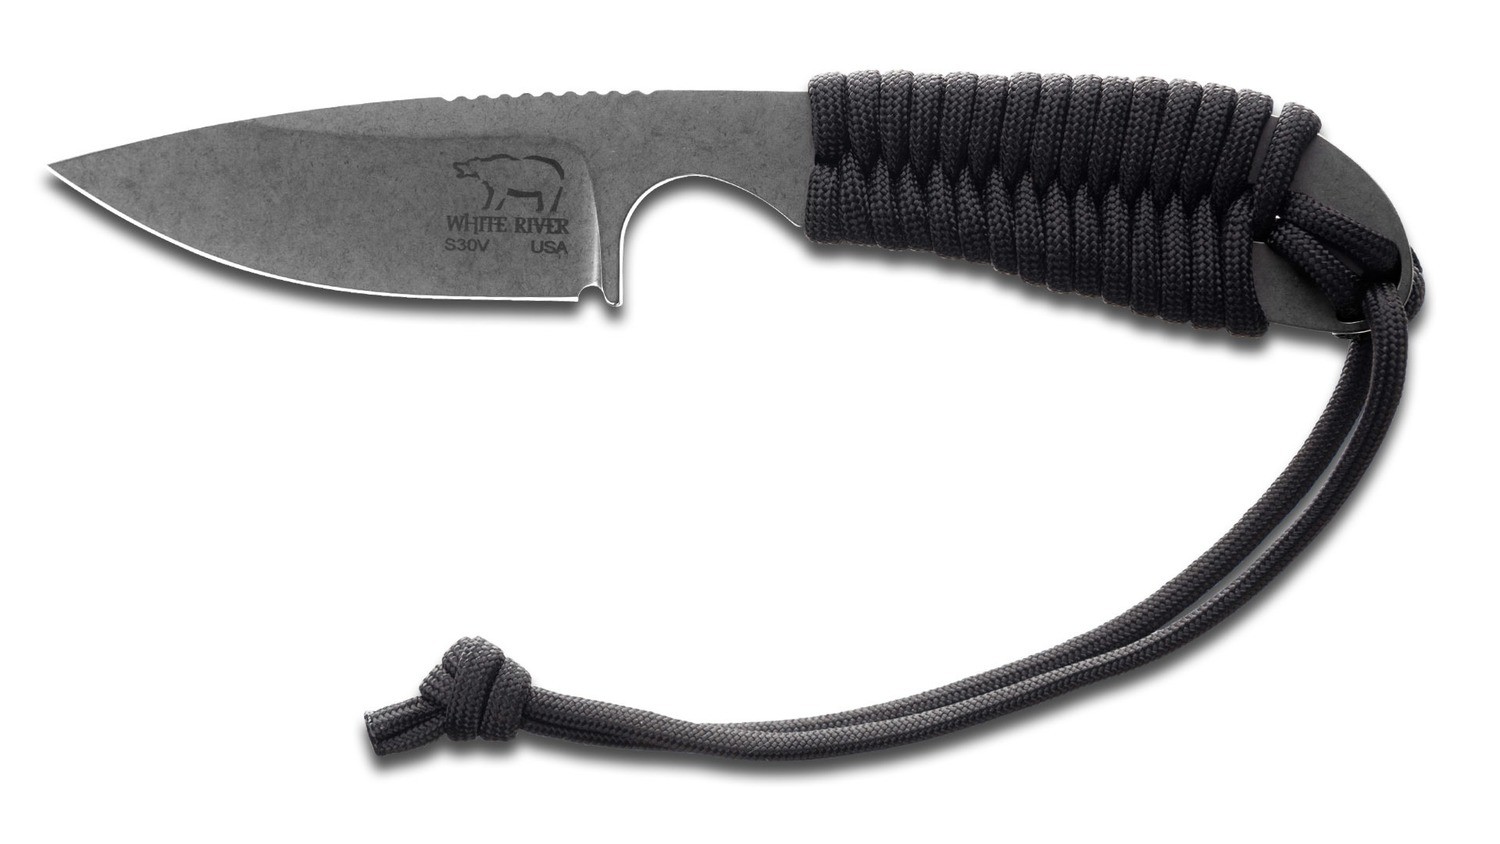 White River Backpacker Knife